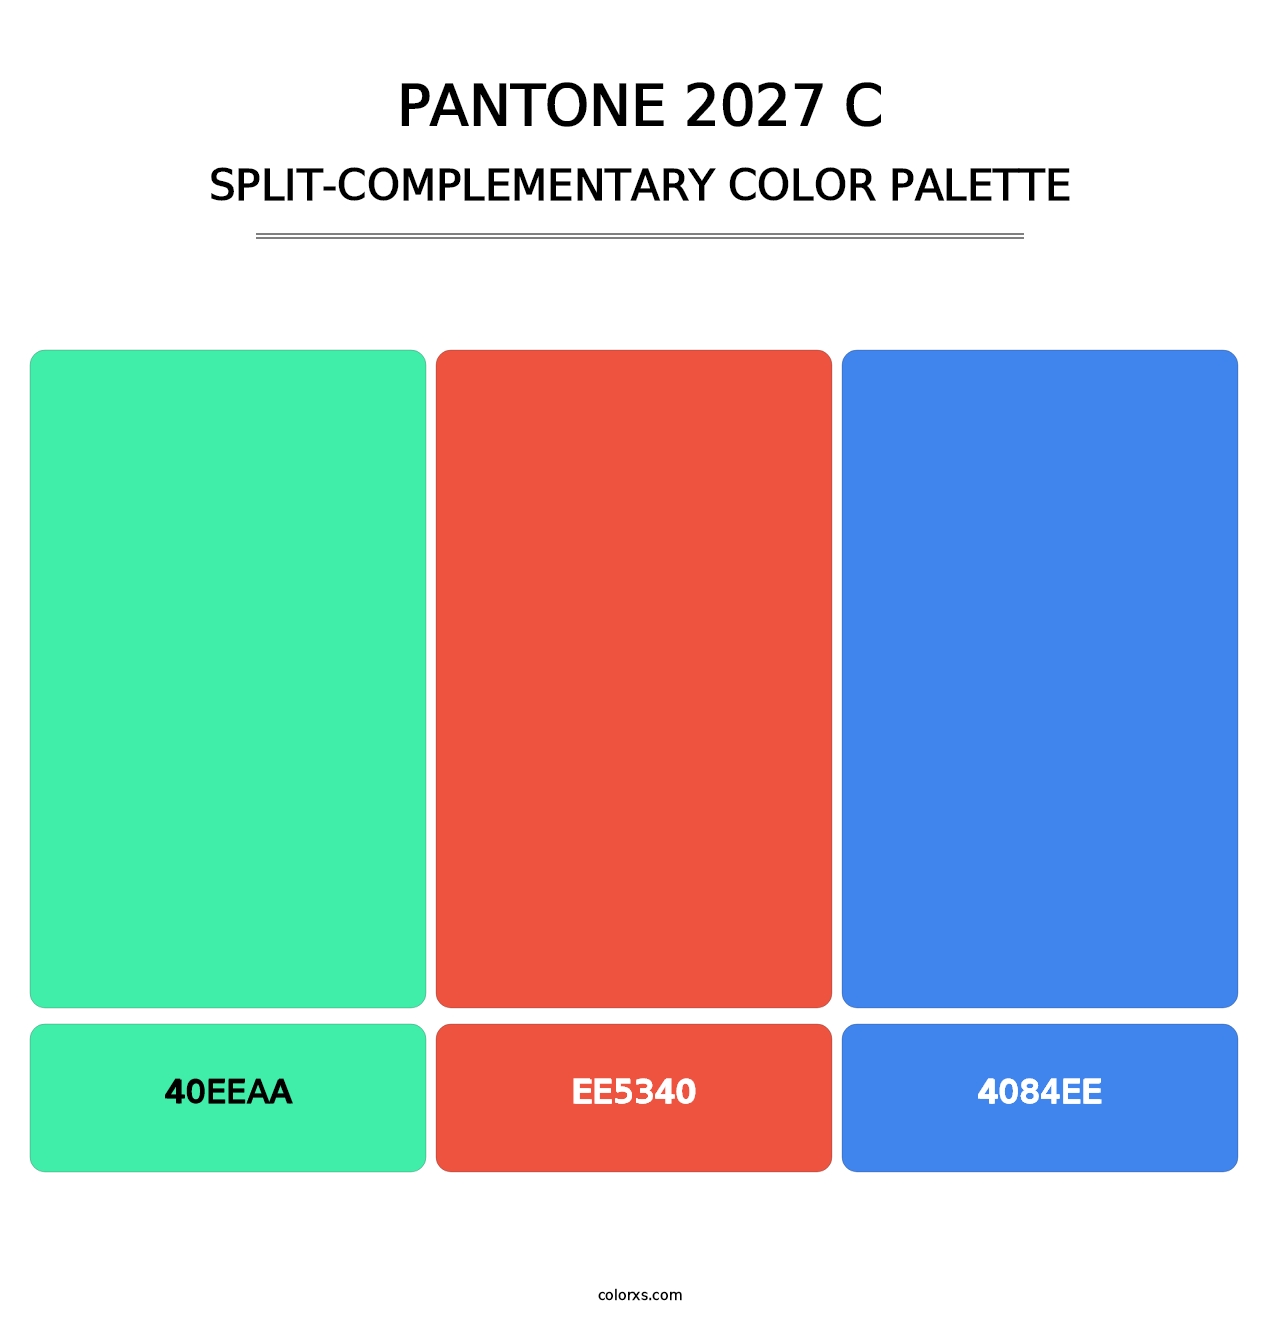 PANTONE 2027 C - Split-Complementary Color Palette